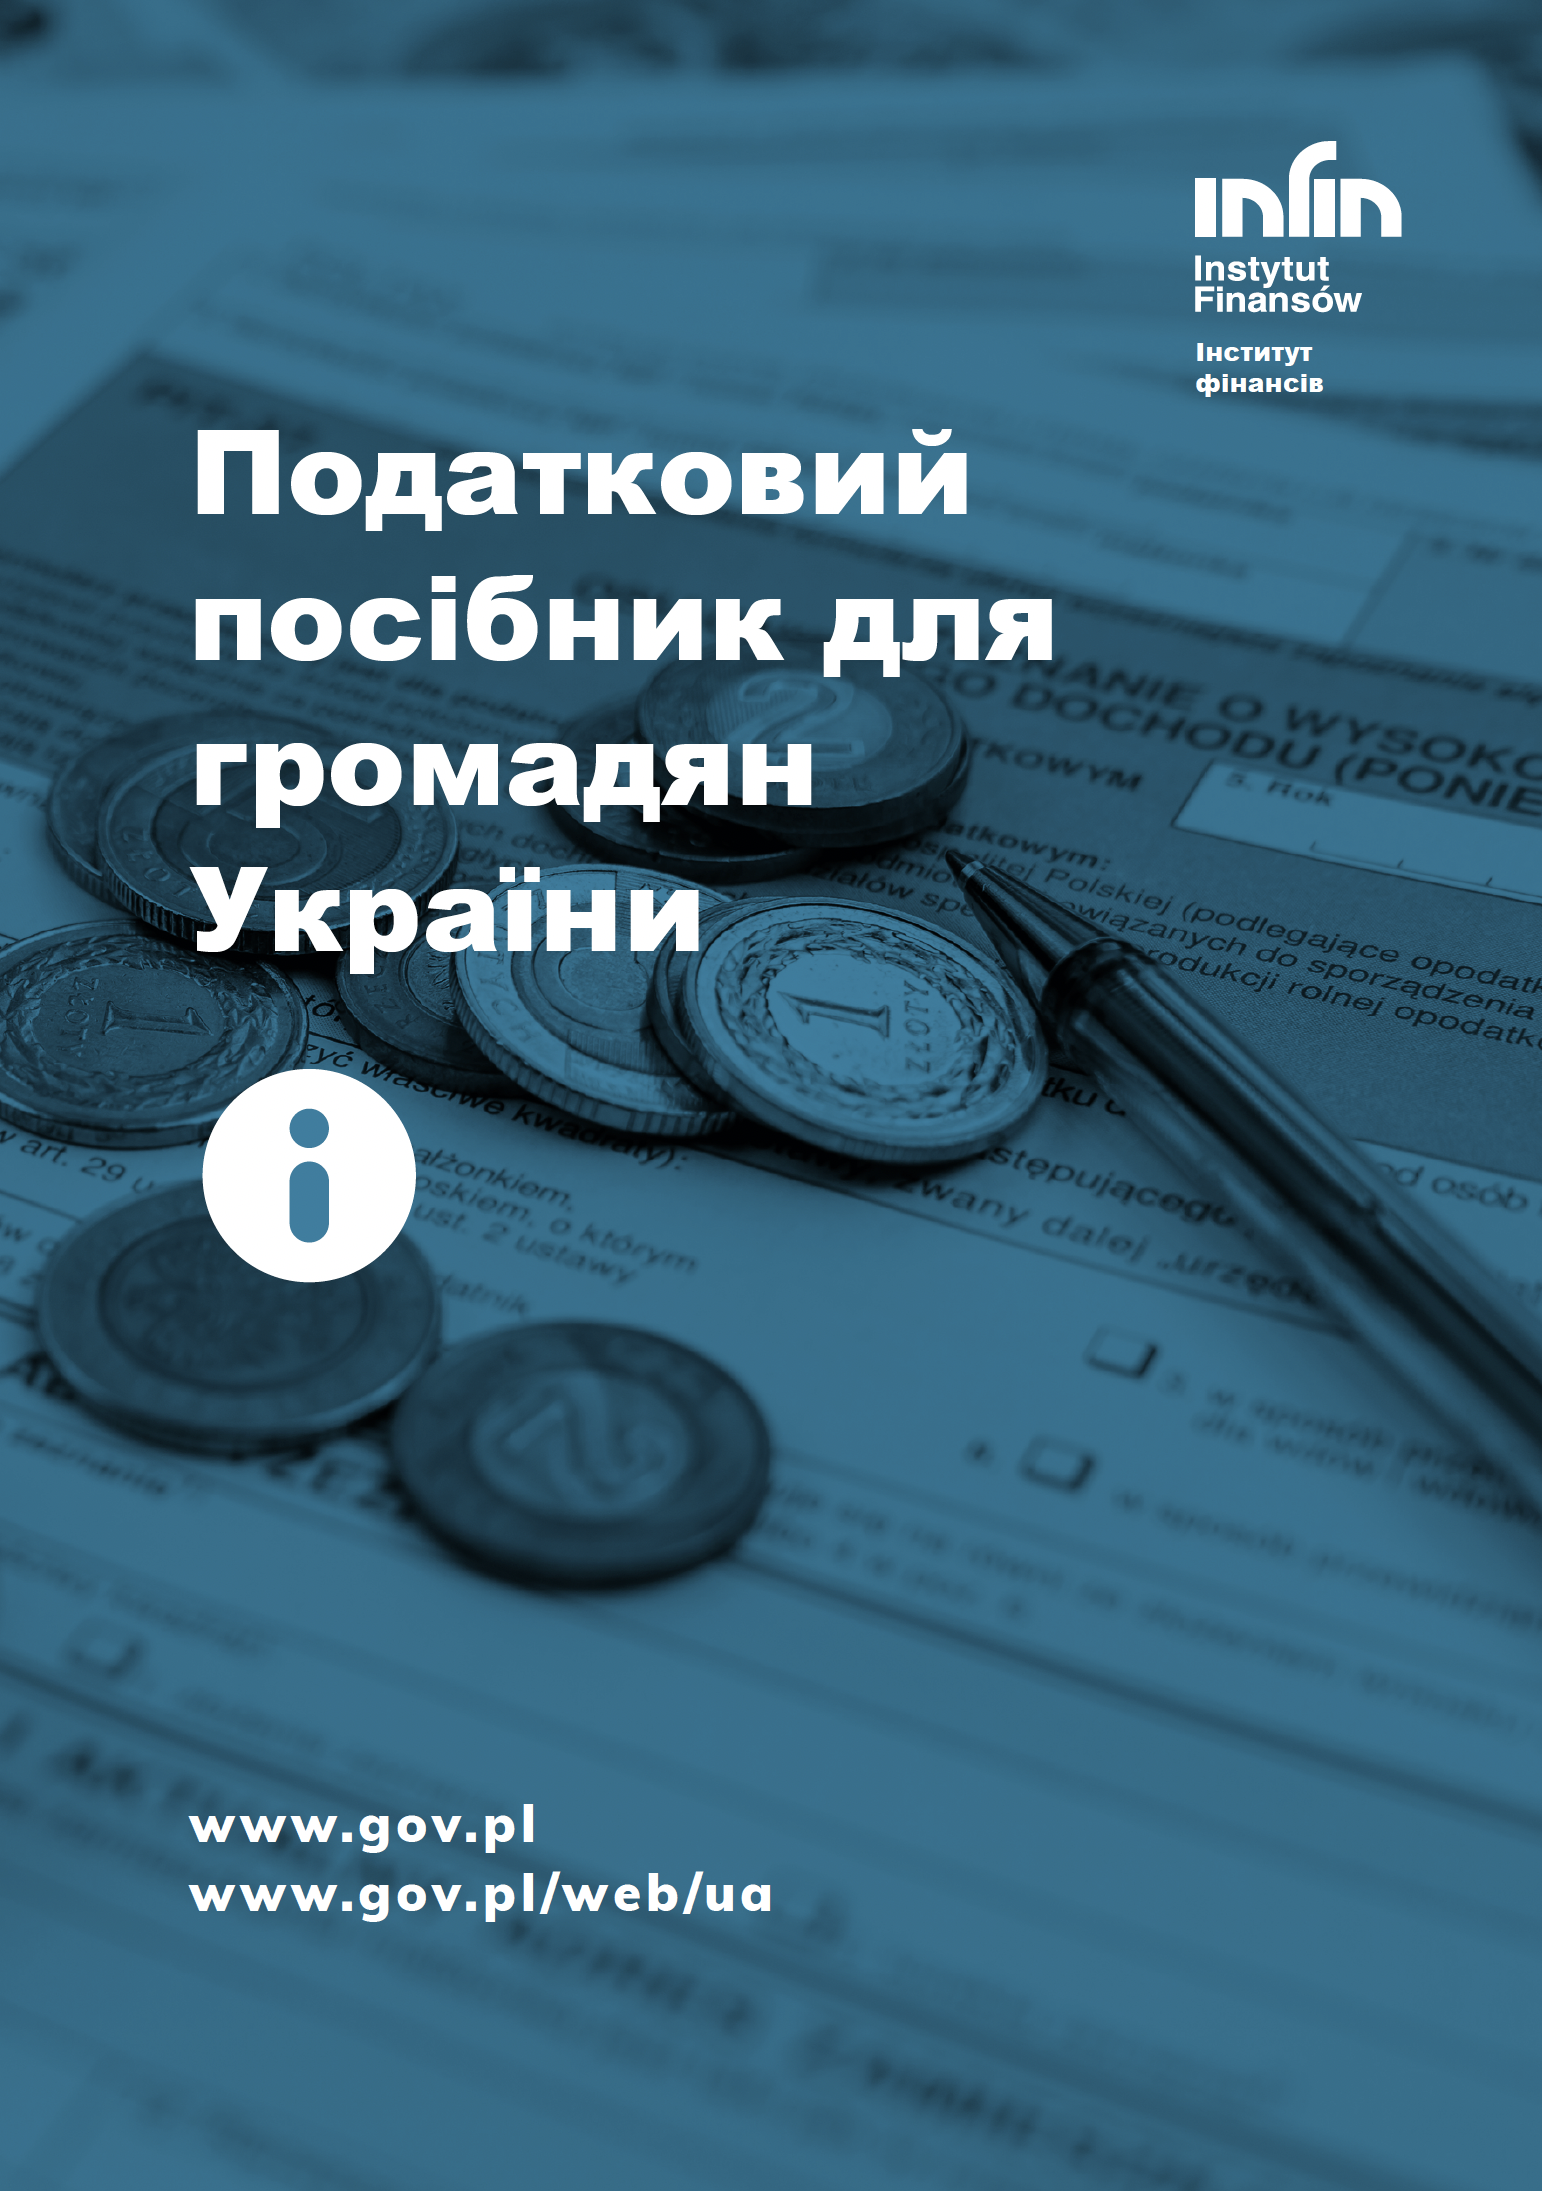 Okładka poradnika podatkowego dla osób z Ukrainy. Na pierwszym planie tytuł w języku ukraińskim, w tle kilka monet położonych na deklaracji podatkowej.